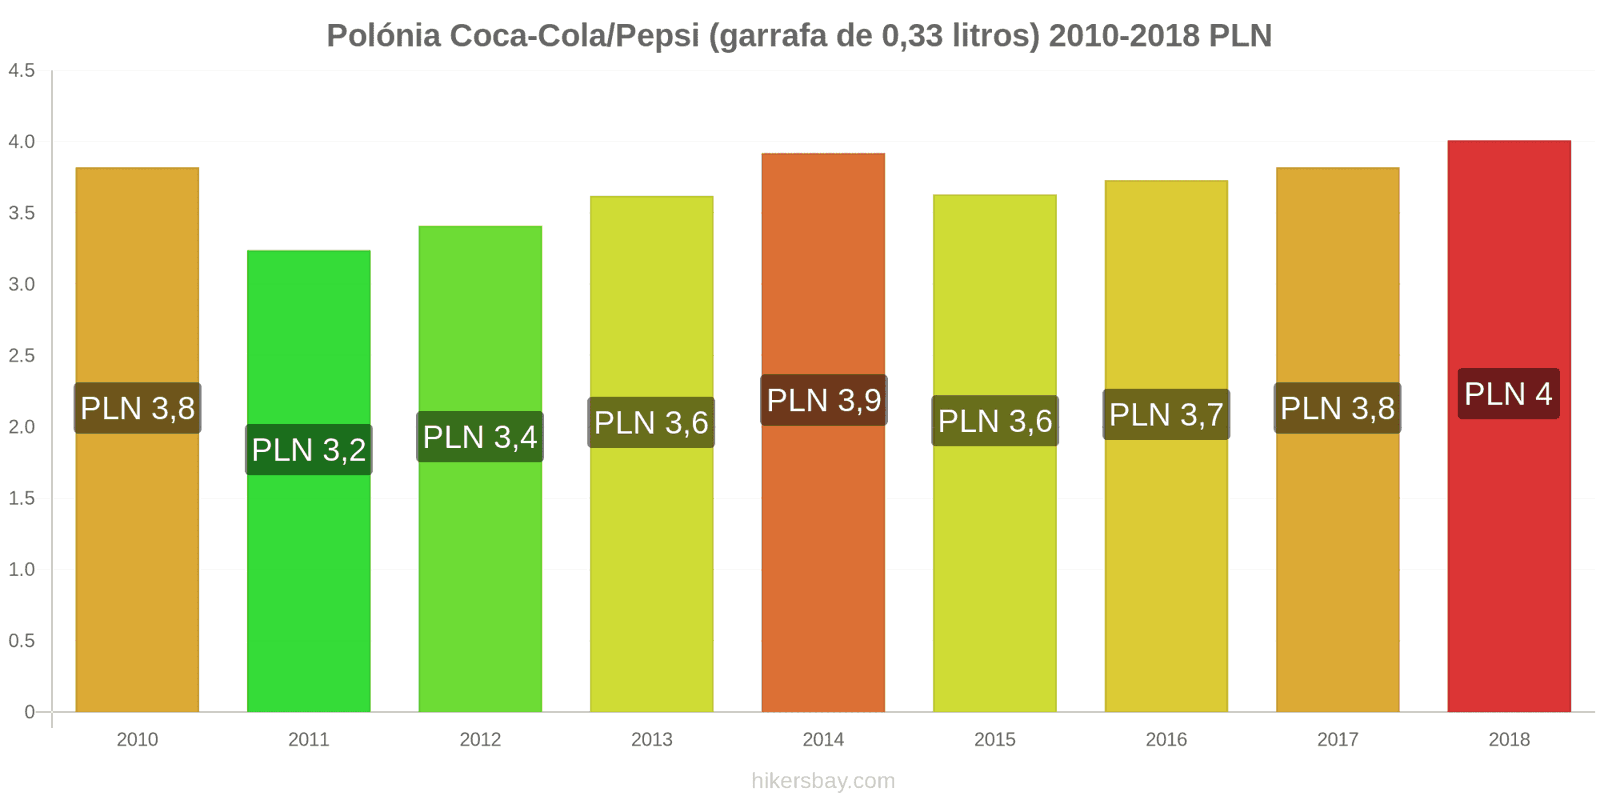 Polónia mudanças de preços Coca-Cola/Pepsi (garrafa de 0.33 litros) hikersbay.com